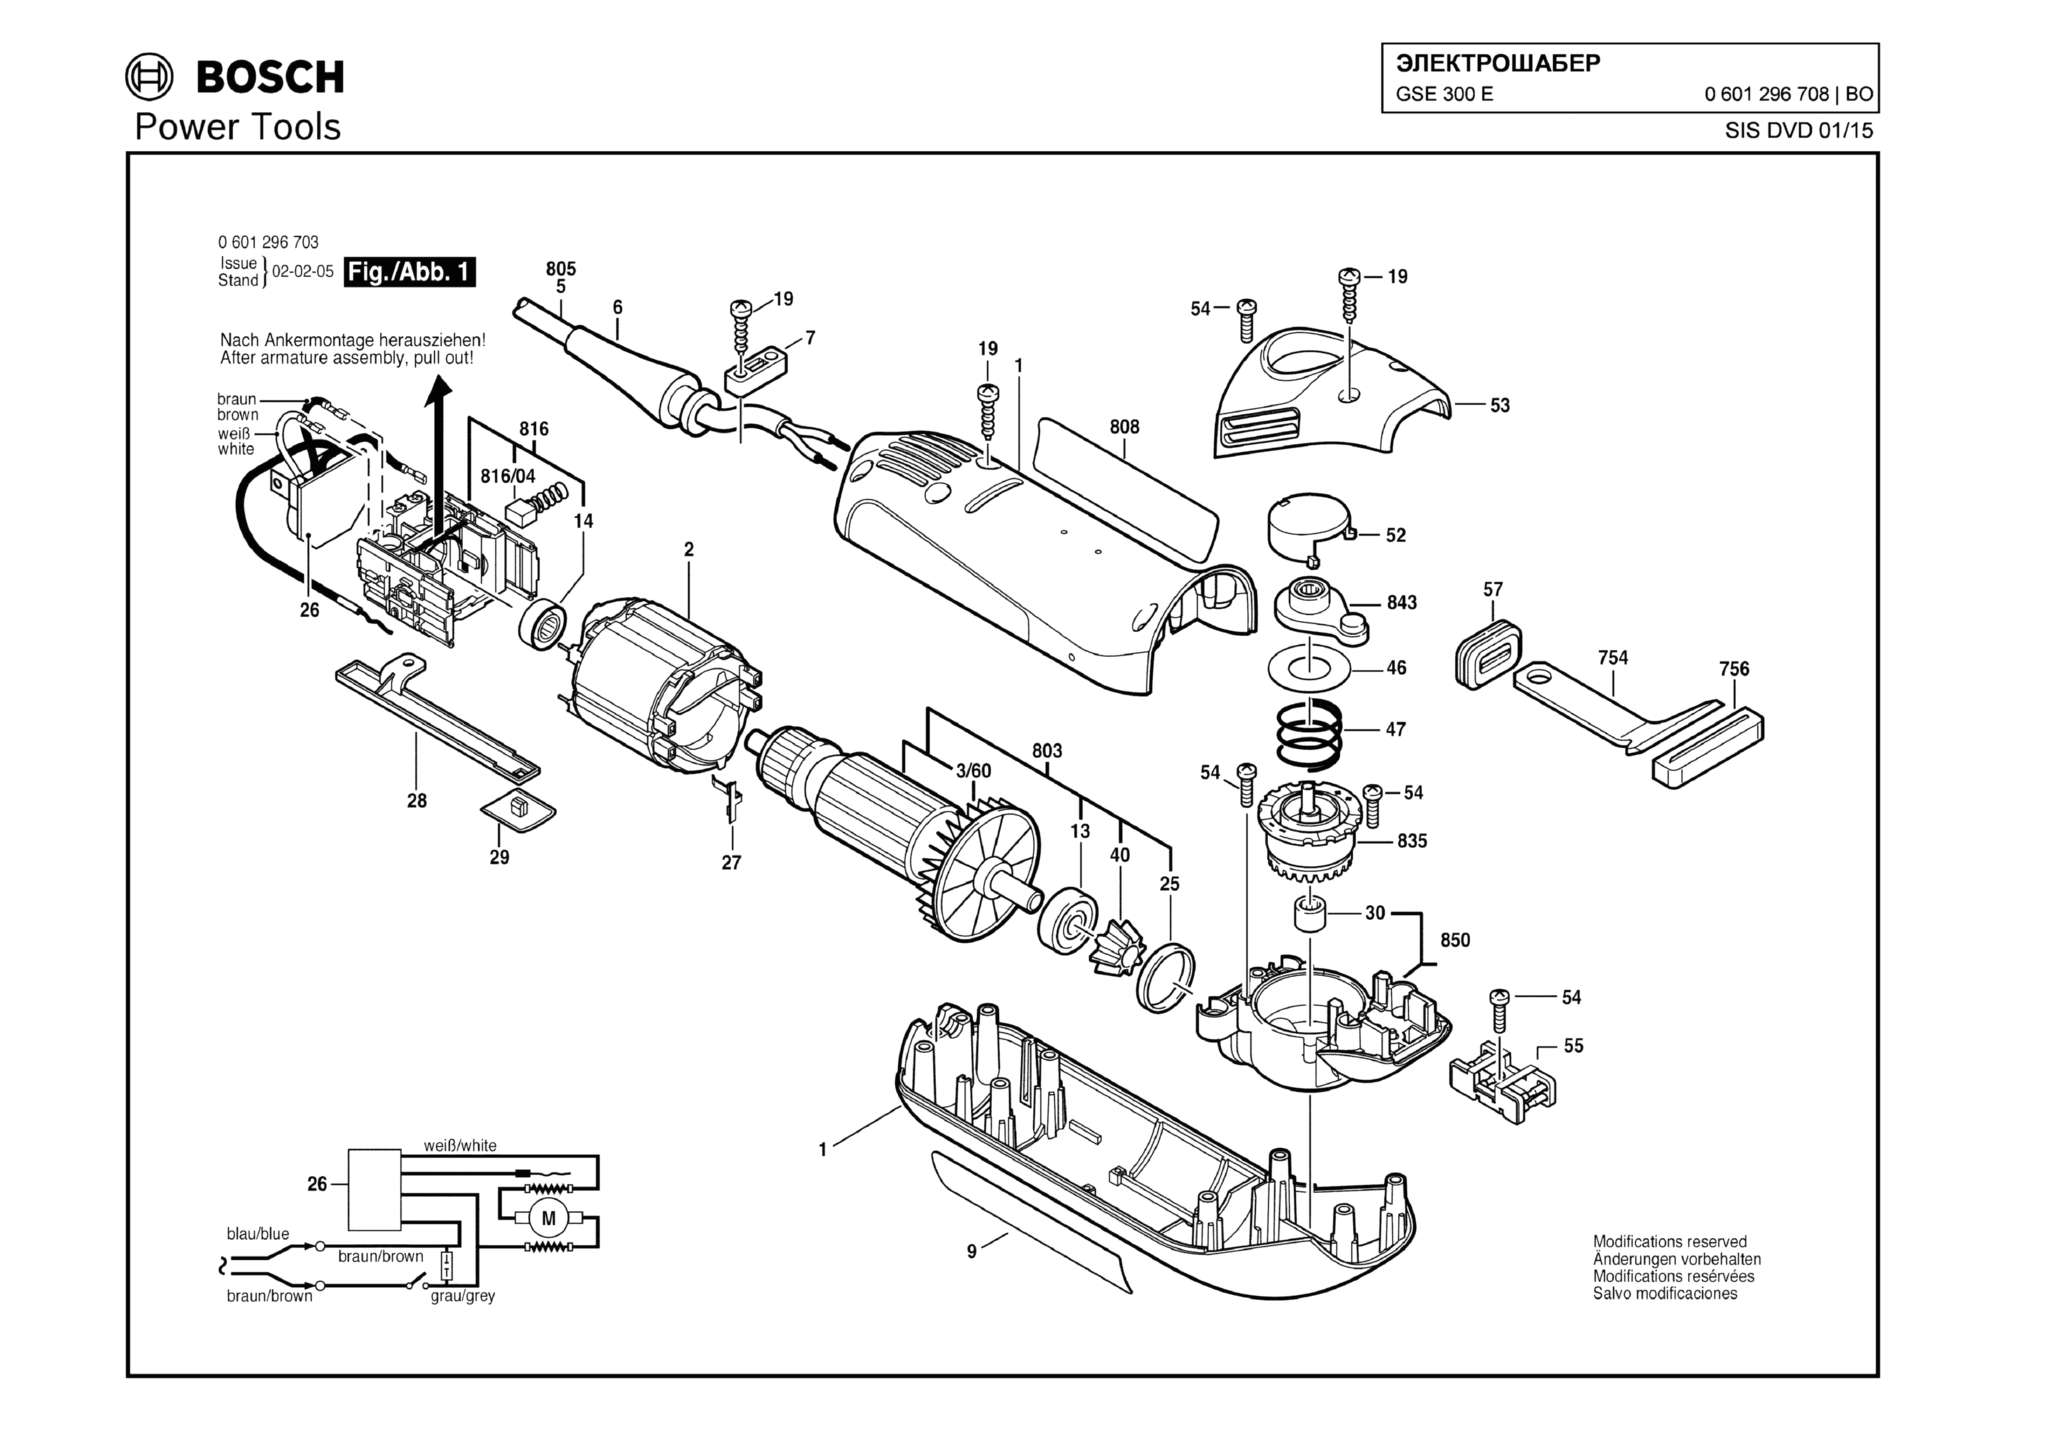 Запчасти, схема и деталировка Bosch GSE 300 E (ТИП 0601296708)